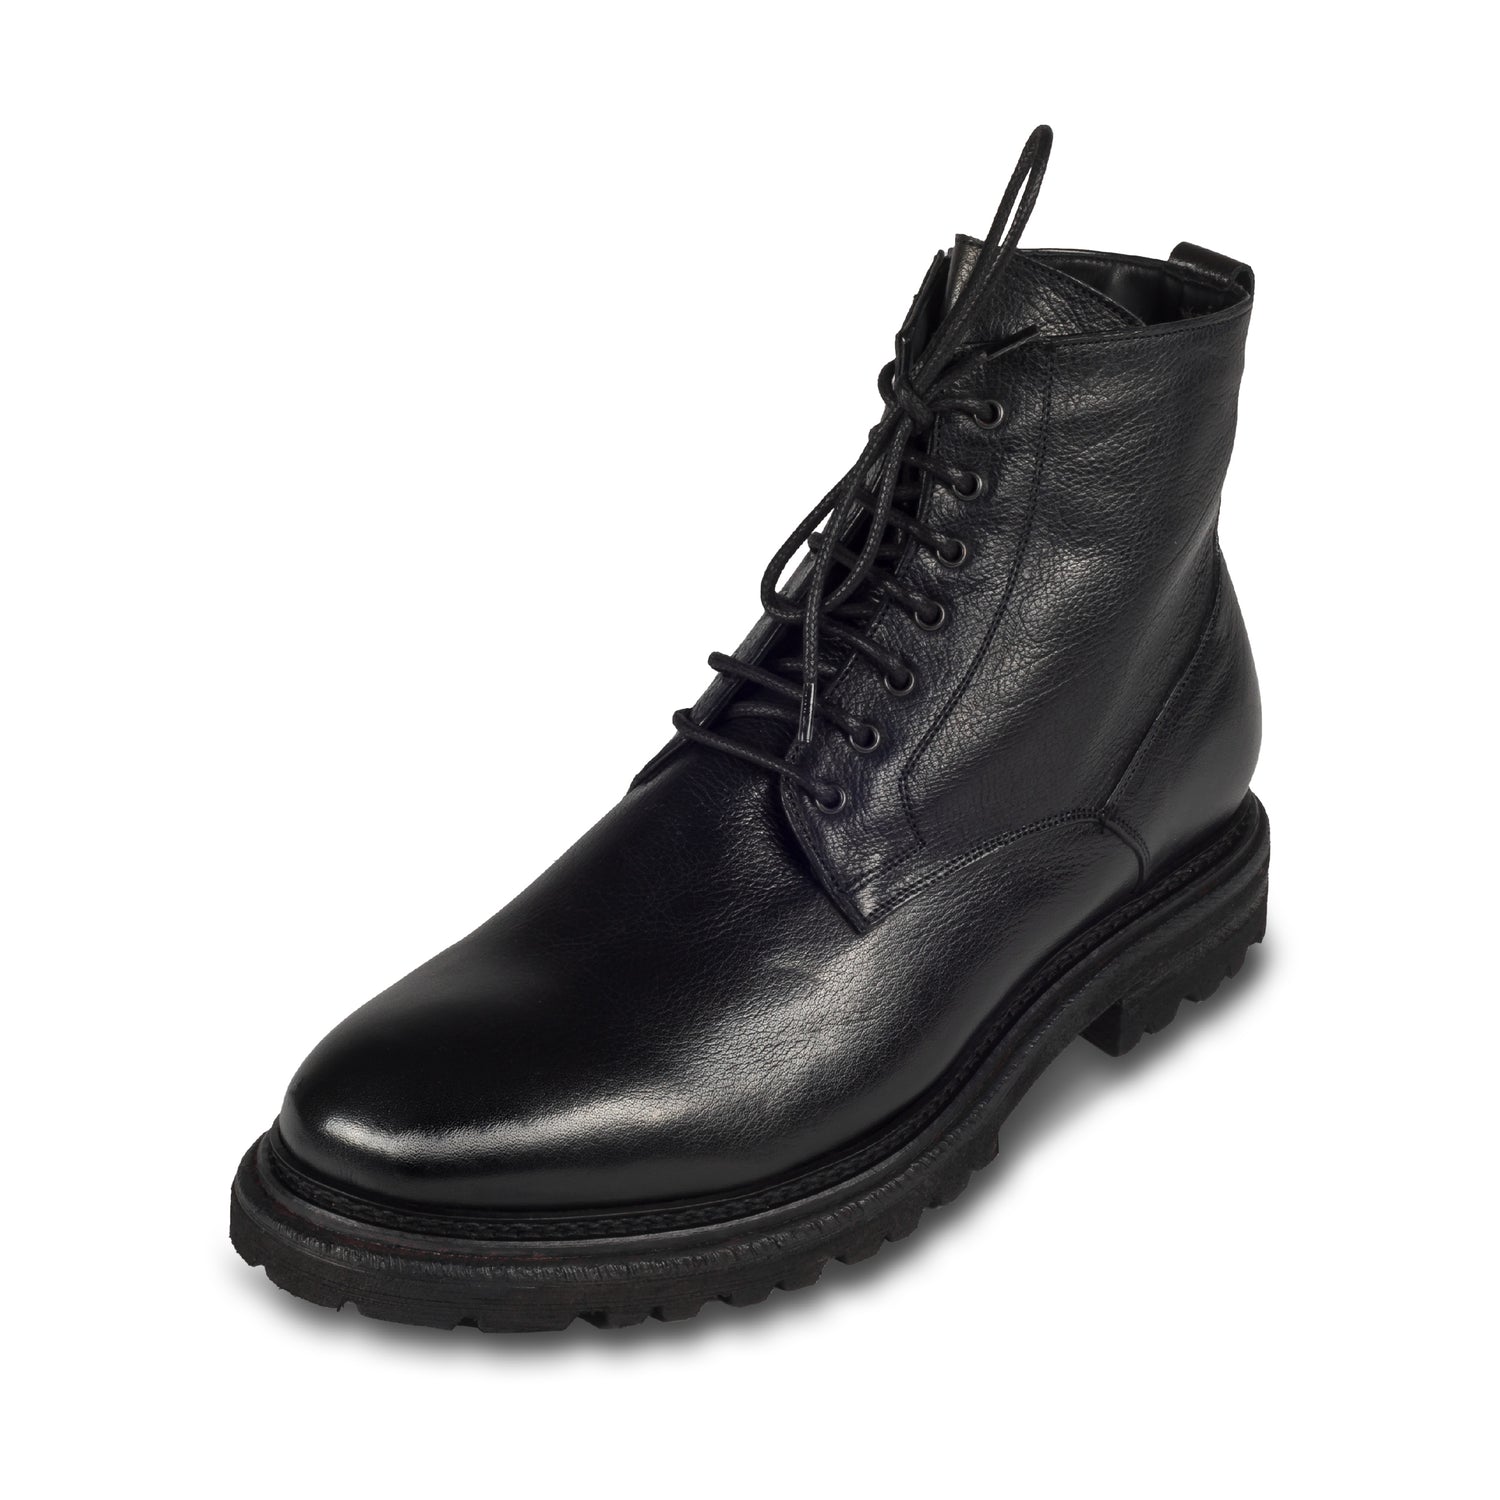 BRECOS - Italienische Herren Schnür-Stiefelette in schwarz mit Reißverschluß. Aus Kalbsleder und mit Lammfell gefüttert. Handgefertigt und durchgenäht. Schräge Ansicht linker Schuh.